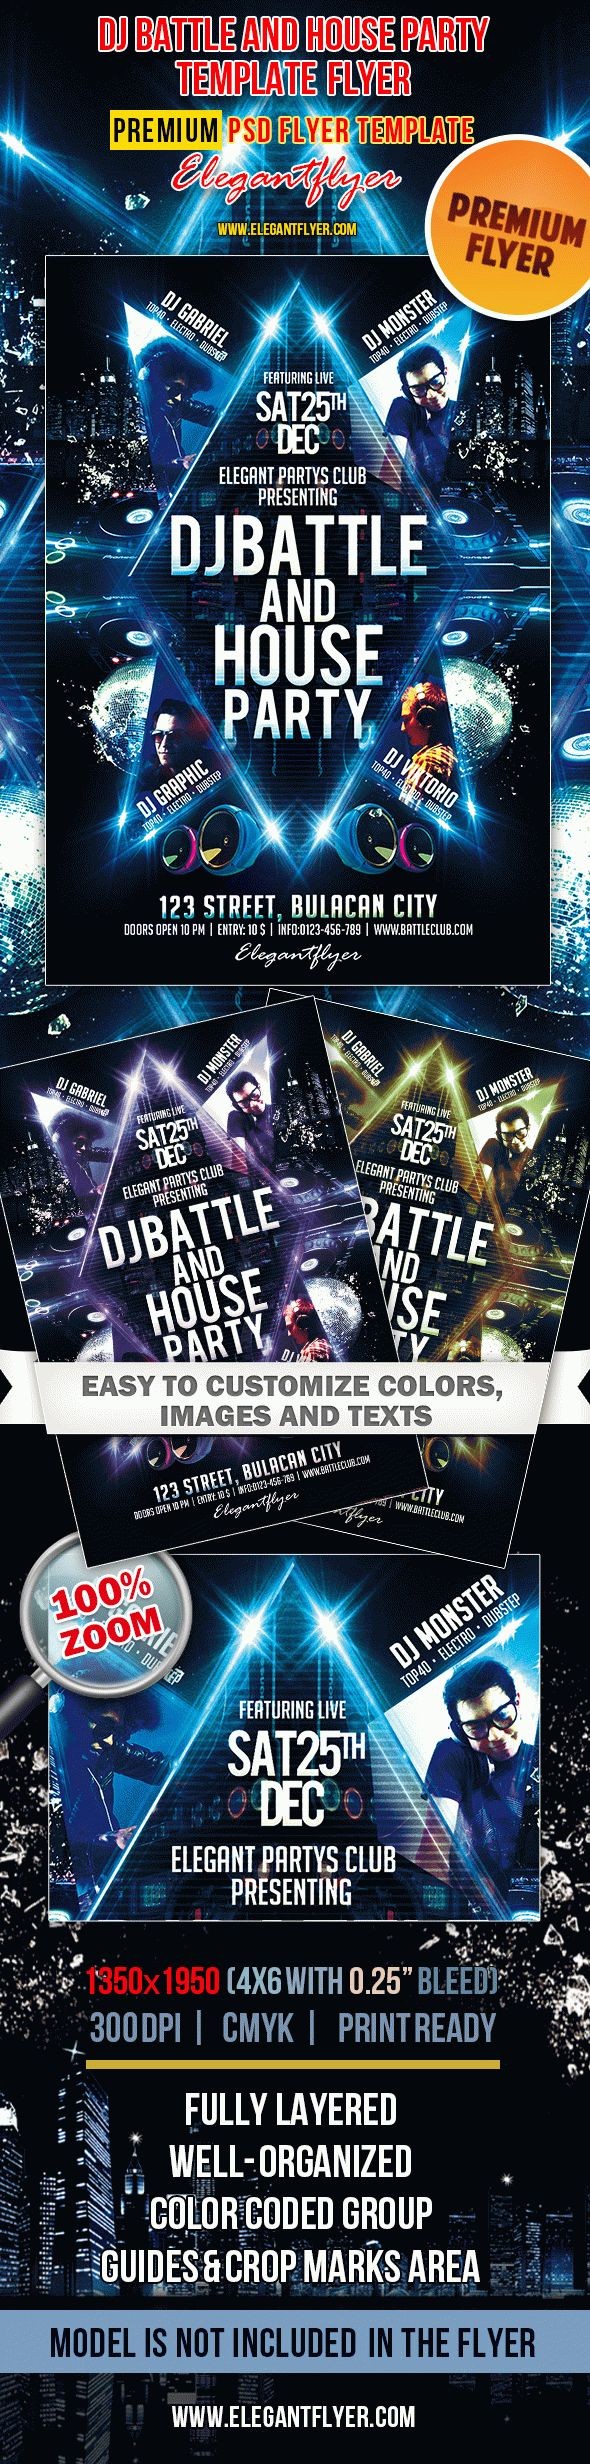 Dj Battle e House Party by ElegantFlyer